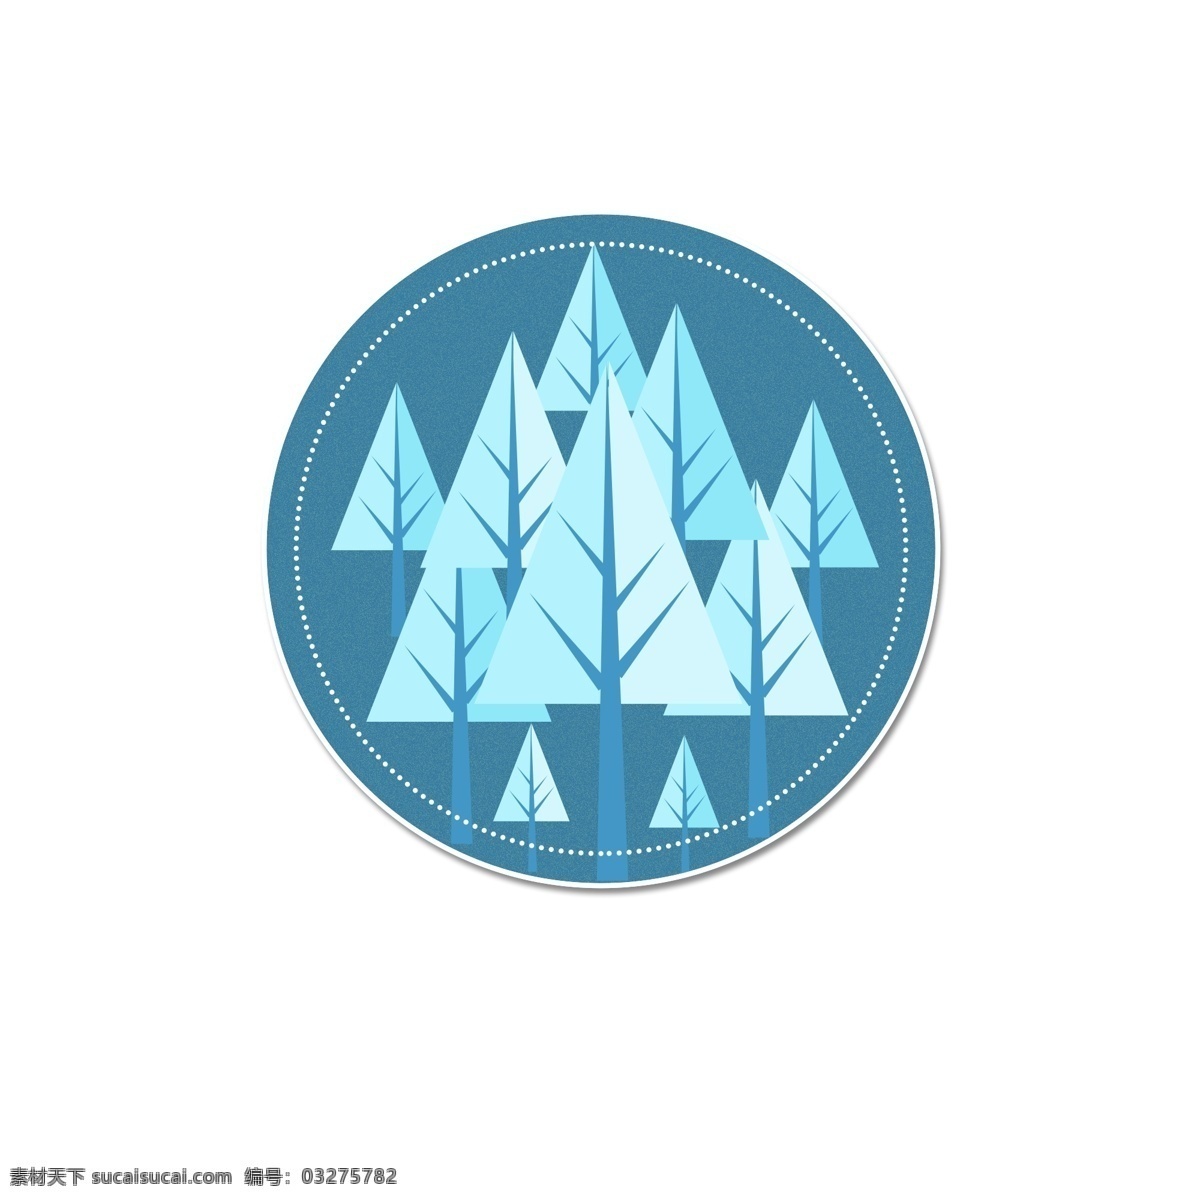 冬季 树木 唯美 矢量 装饰 装饰素材 冬季树木 冬至背景 冬至素材 卡通树木 矢量树木 秃树